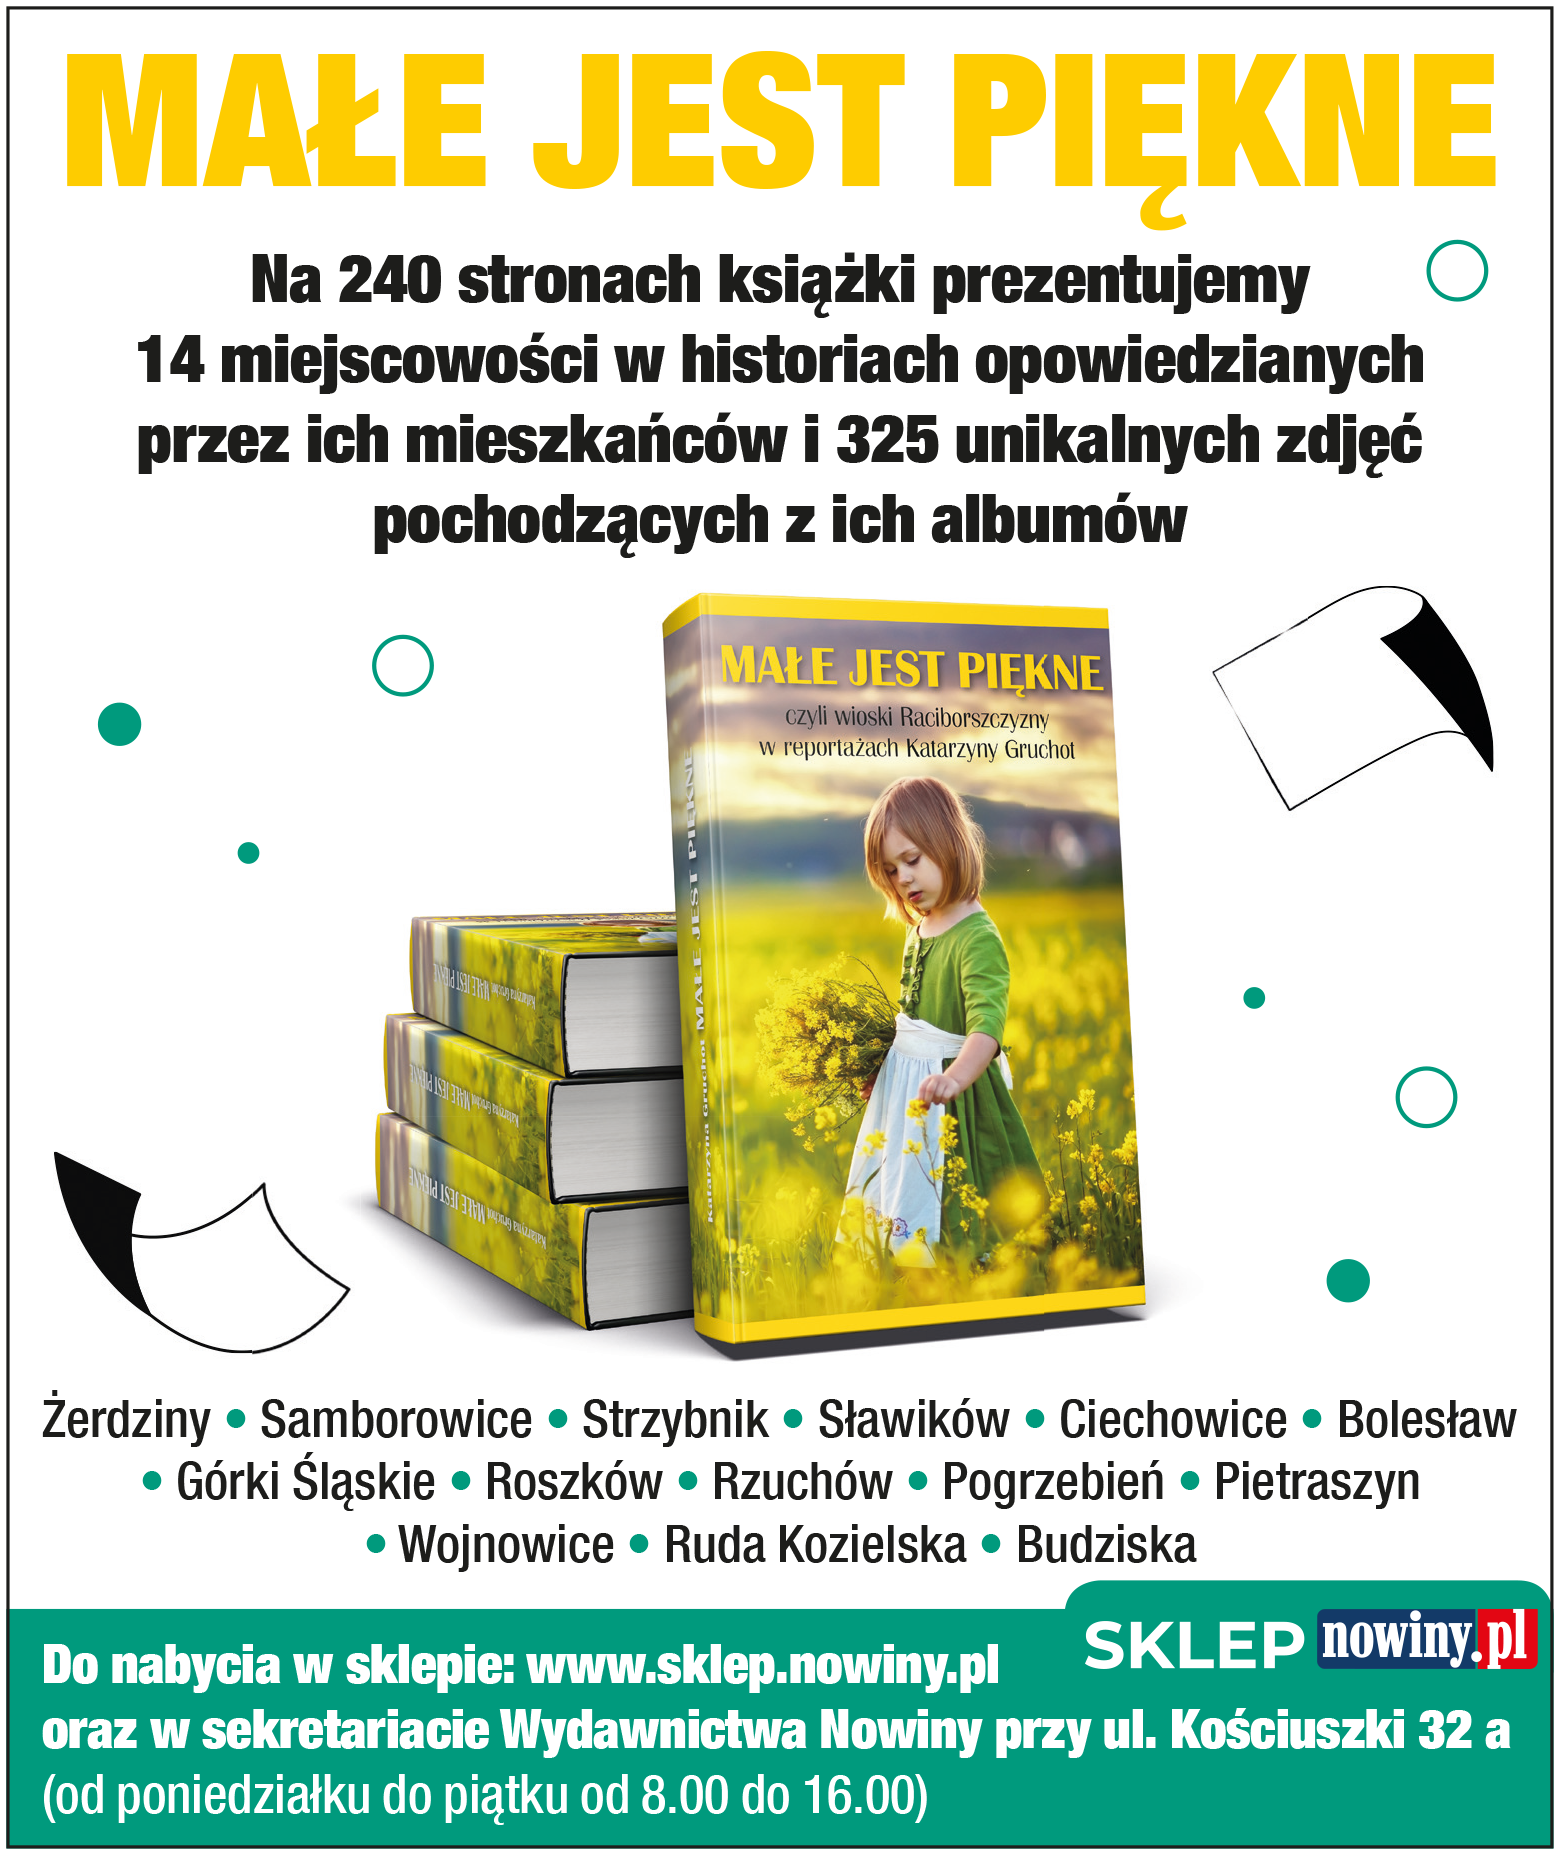 Książka Małe jest piękne jest dostępna na sklep.nowiny.pl